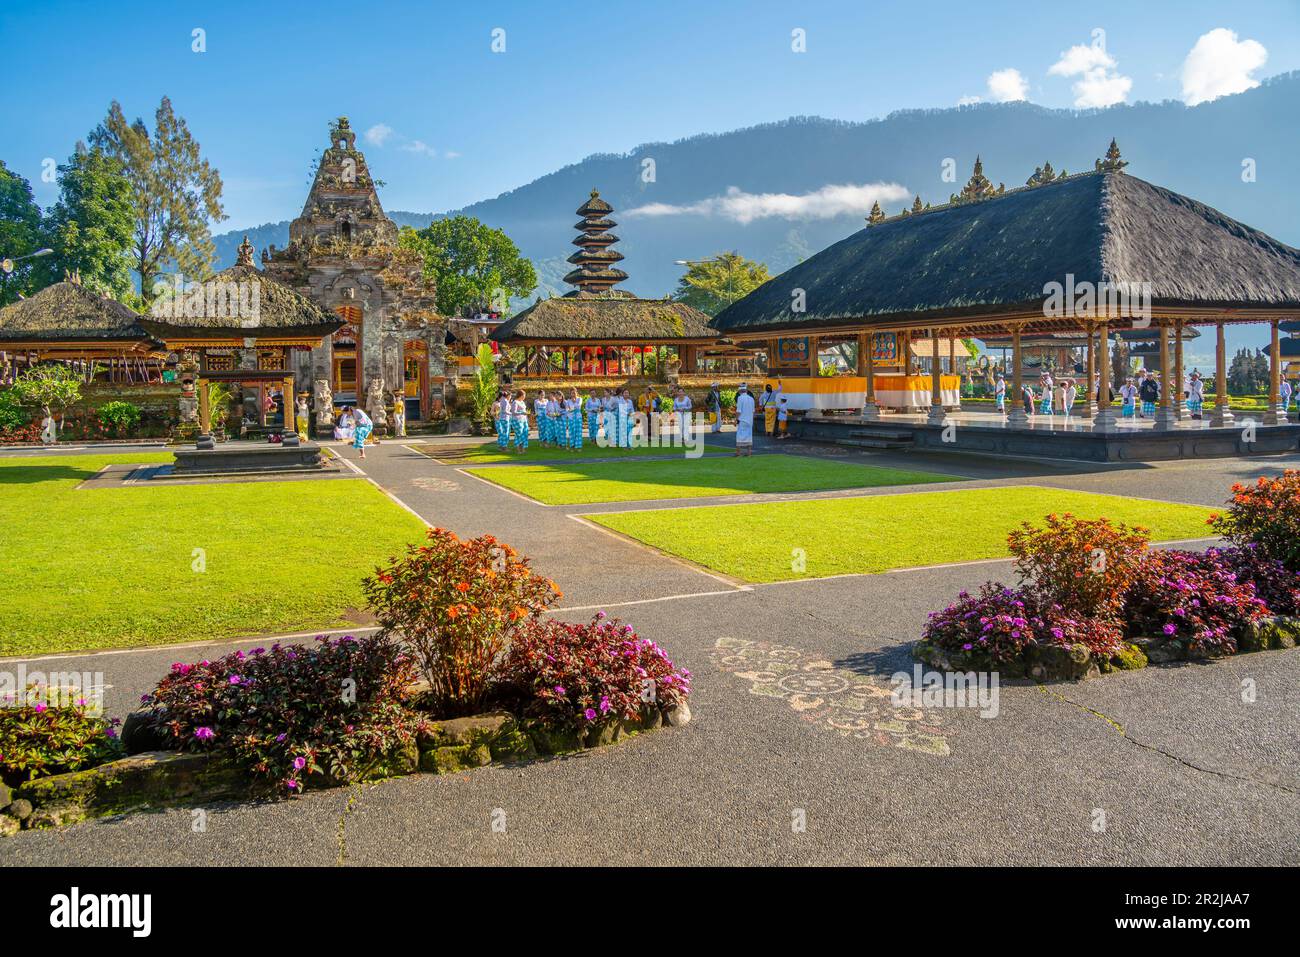 View of Ulun Danu Beratan temple on Lake Bratan, Bali, Indonesia, South East Asia, Asia Stock Photo